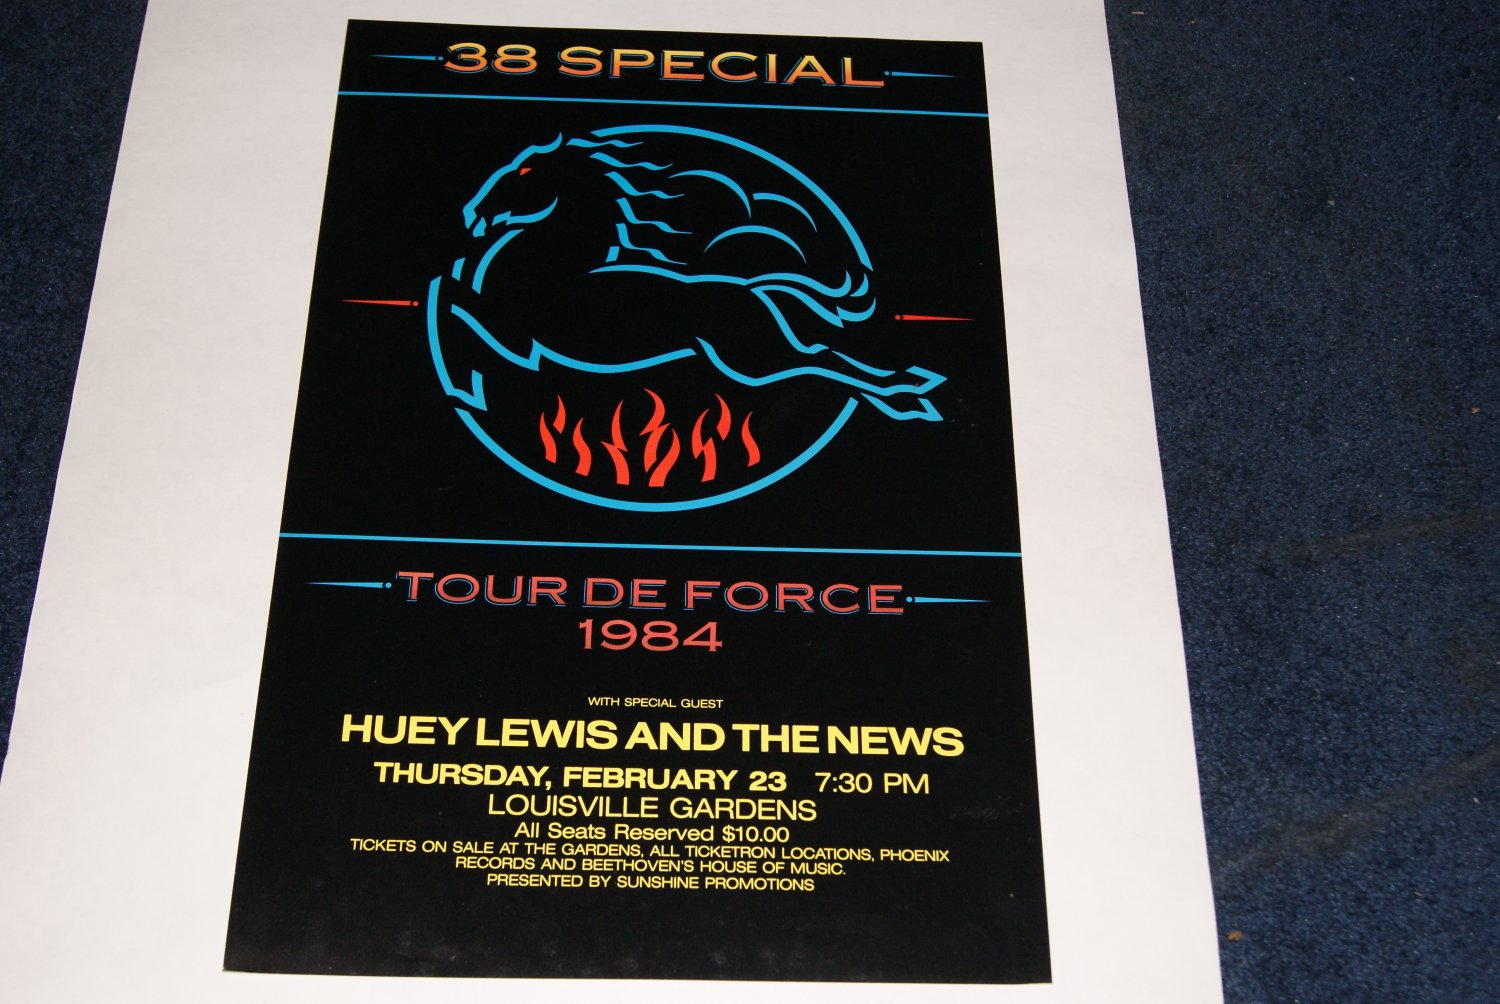 38 Special Tour De Force Concert Poster